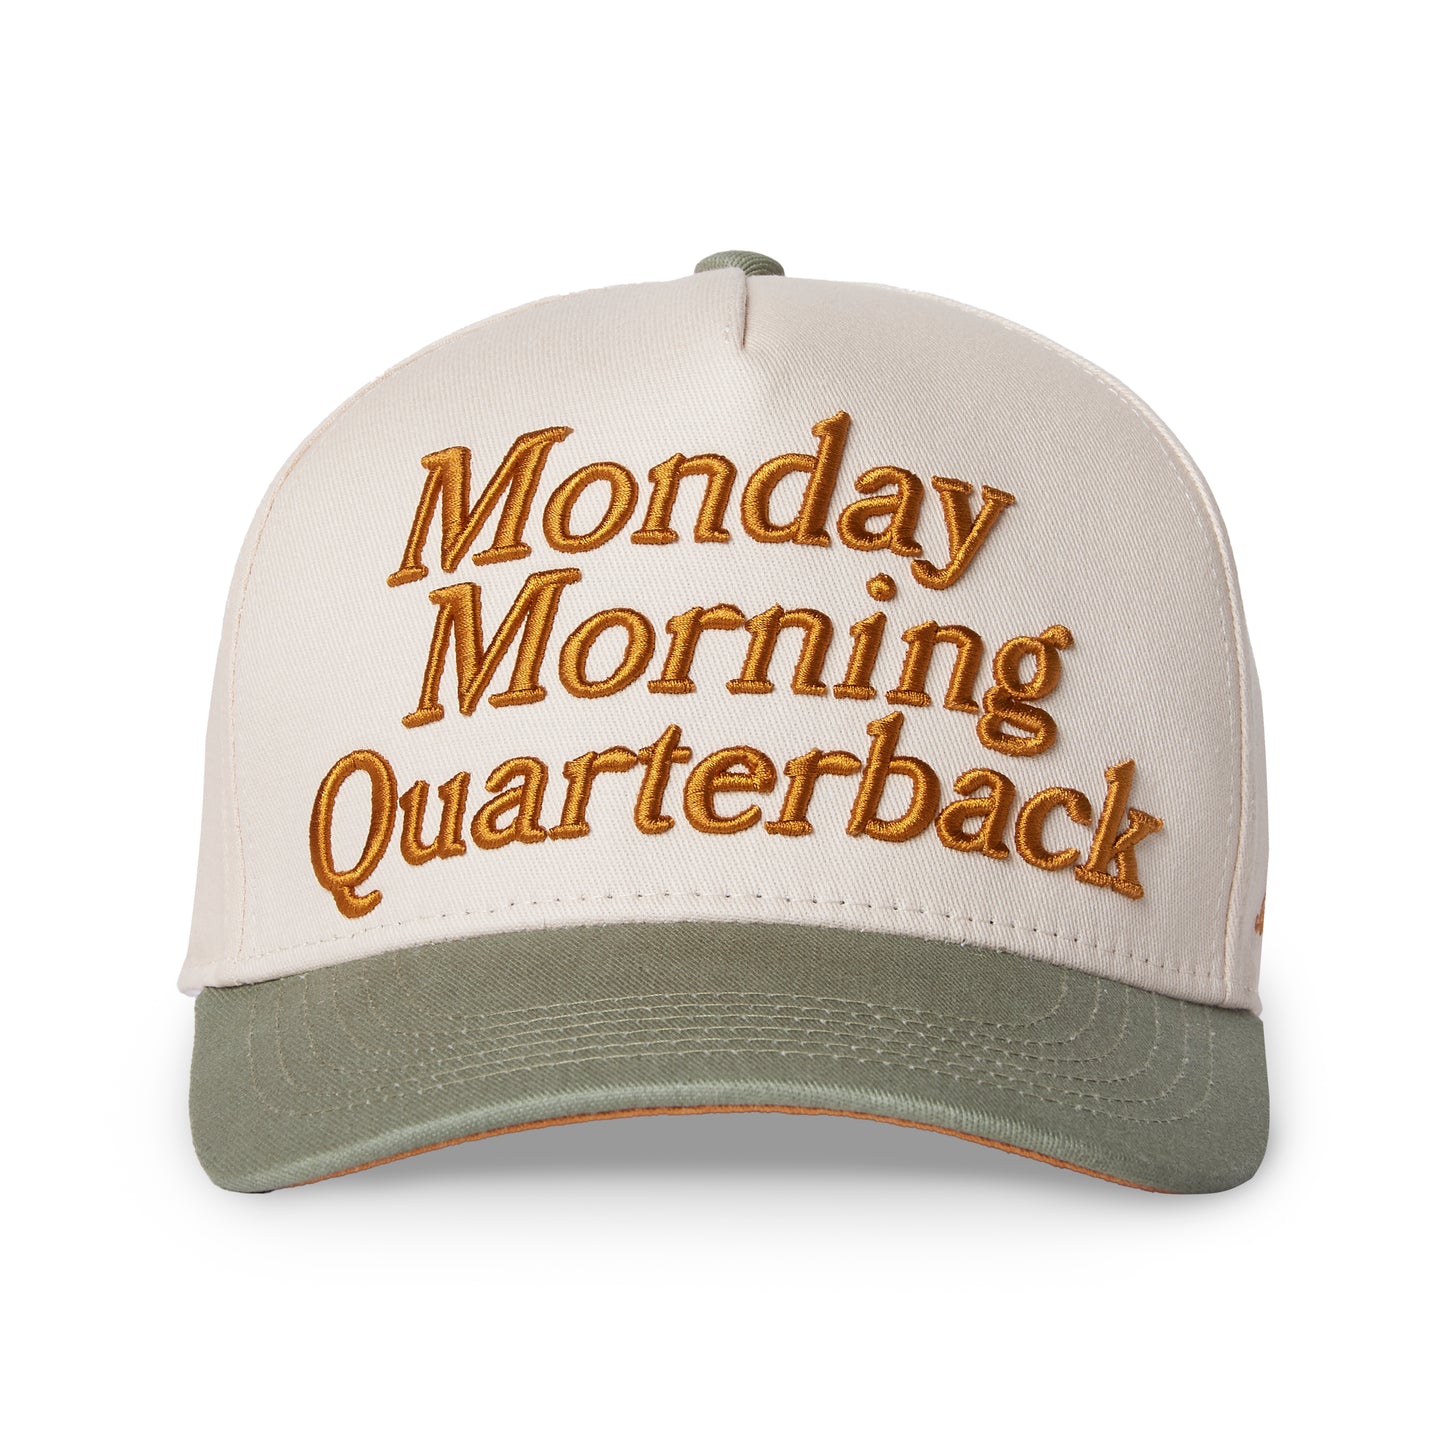 Monday Morning Quarterback Cap | Turtledove / Golden Orange